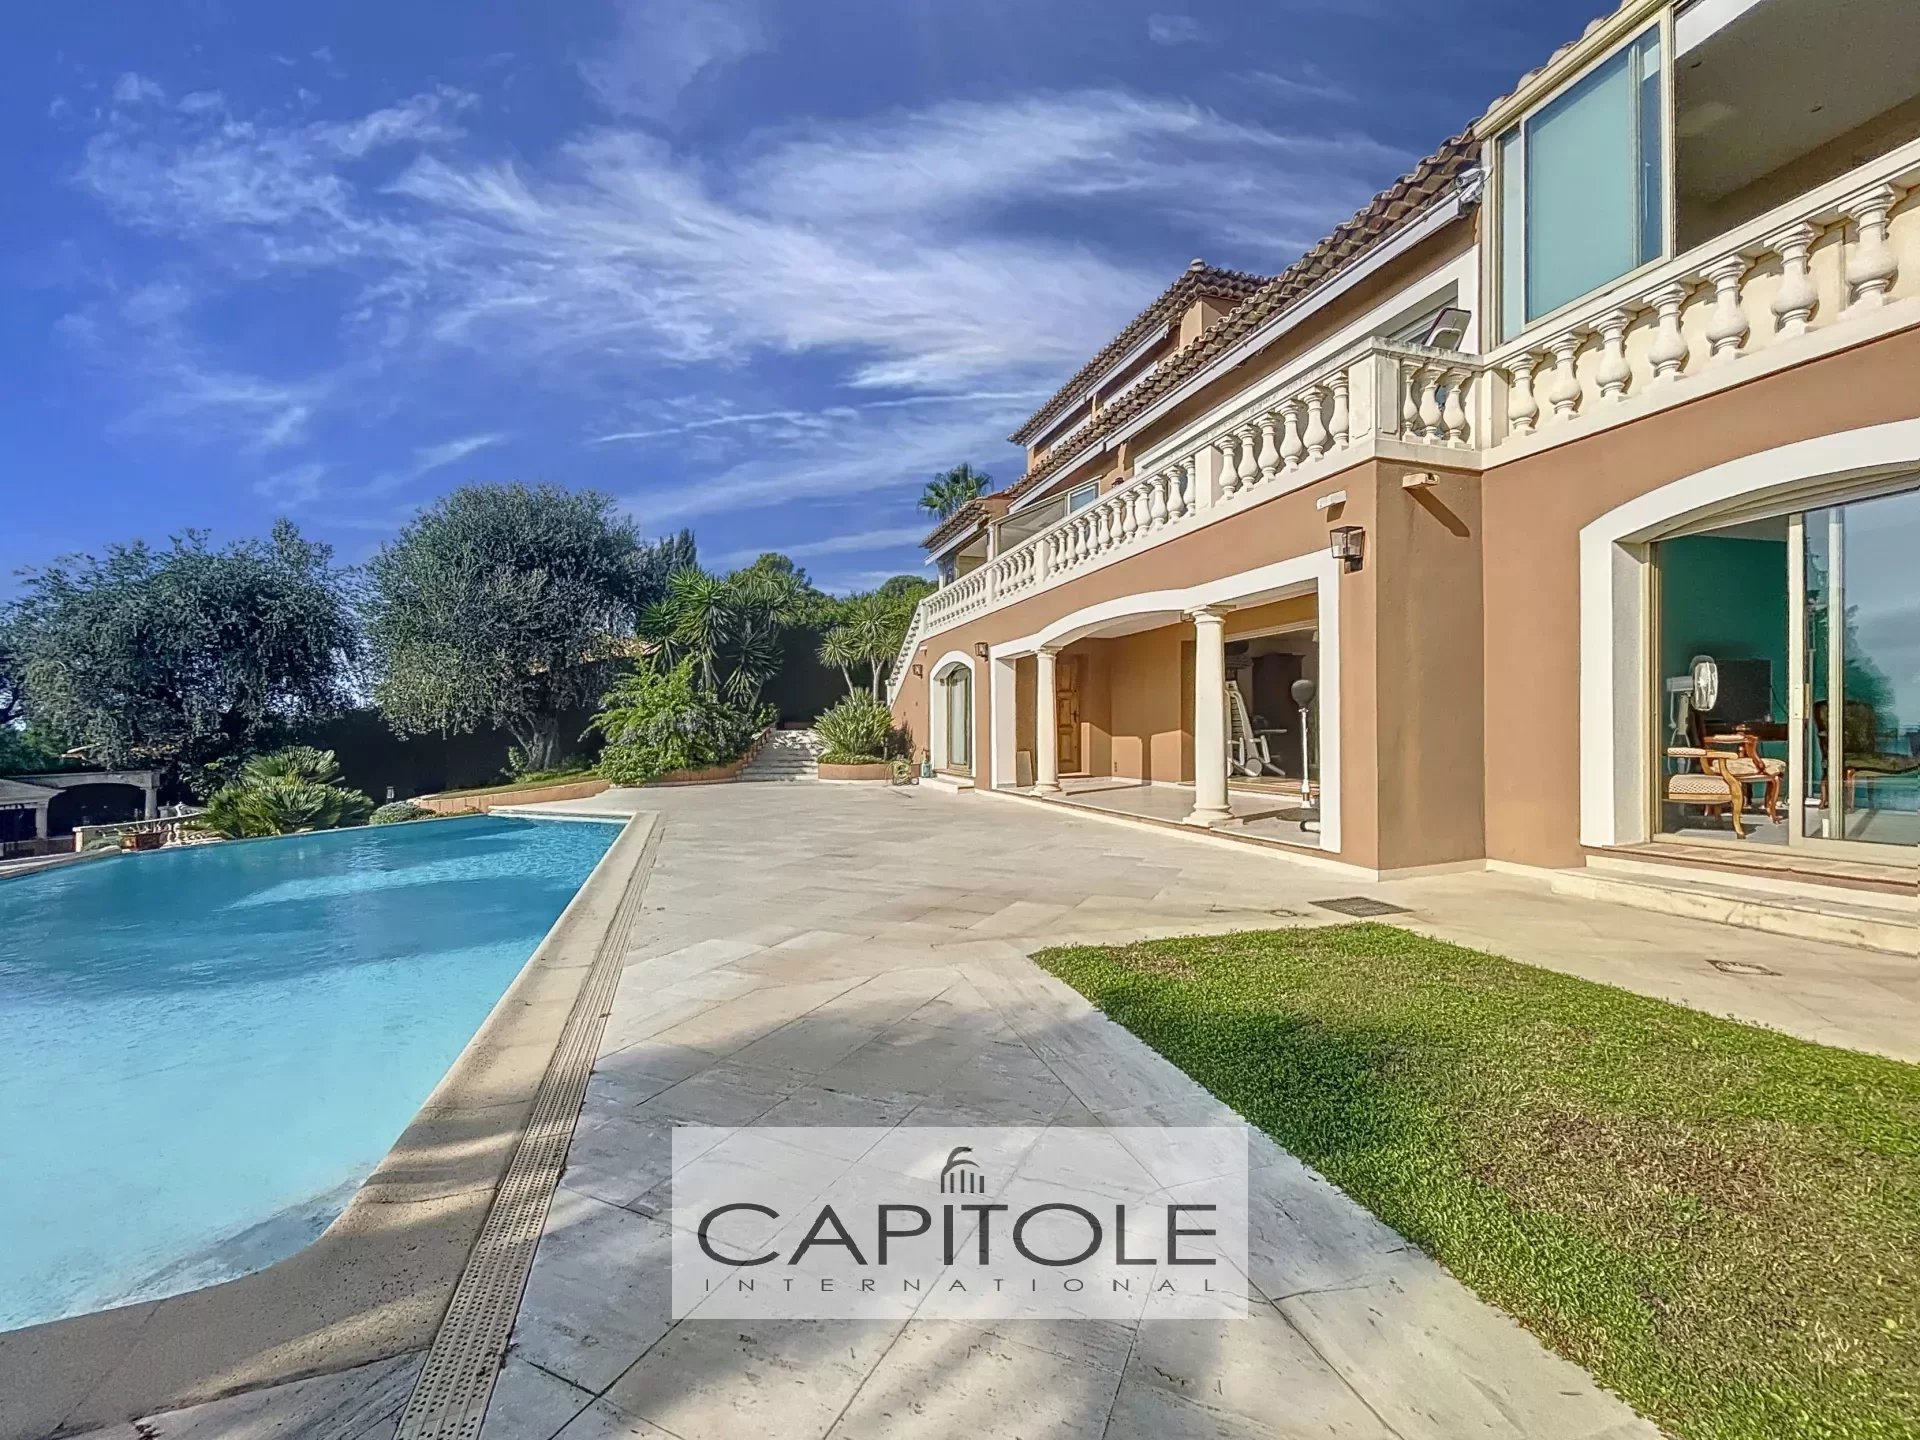 A vendre, Golfe Juan, villa provençale 8 pièces, vue mer panoramique, jardin méditerranéen de 2 300 m², piscine, garage